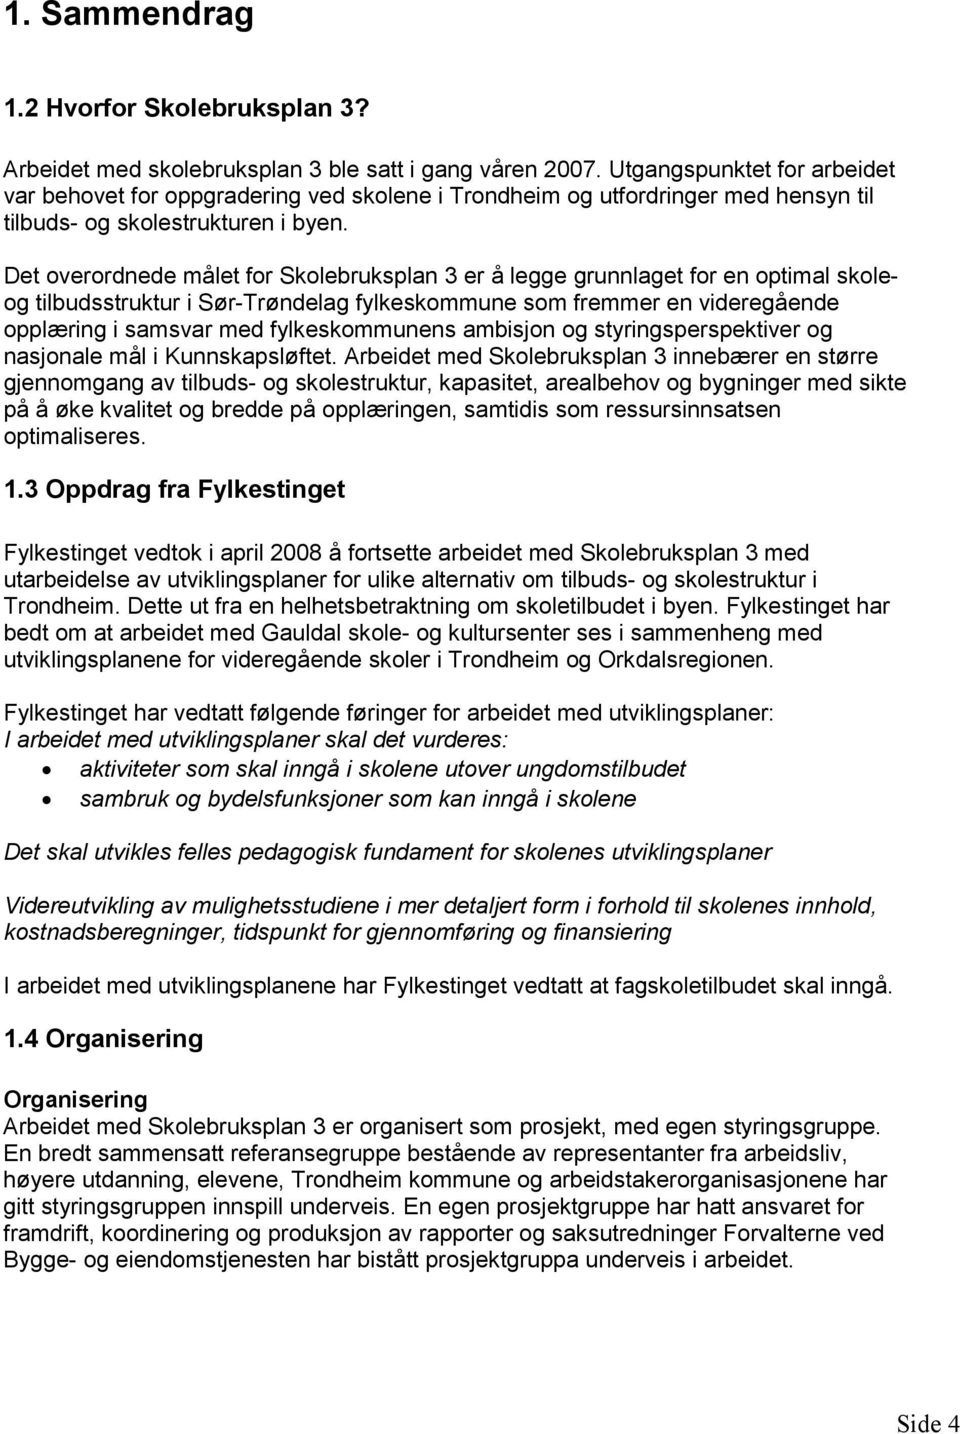 Det overordnede målet for Skolebruksplan 3 er å legge grunnlaget for en optimal skoleog tilbudsstruktur i Sør-Trøndelag fylkeskommune som fremmer en videregående opplæring i samsvar med